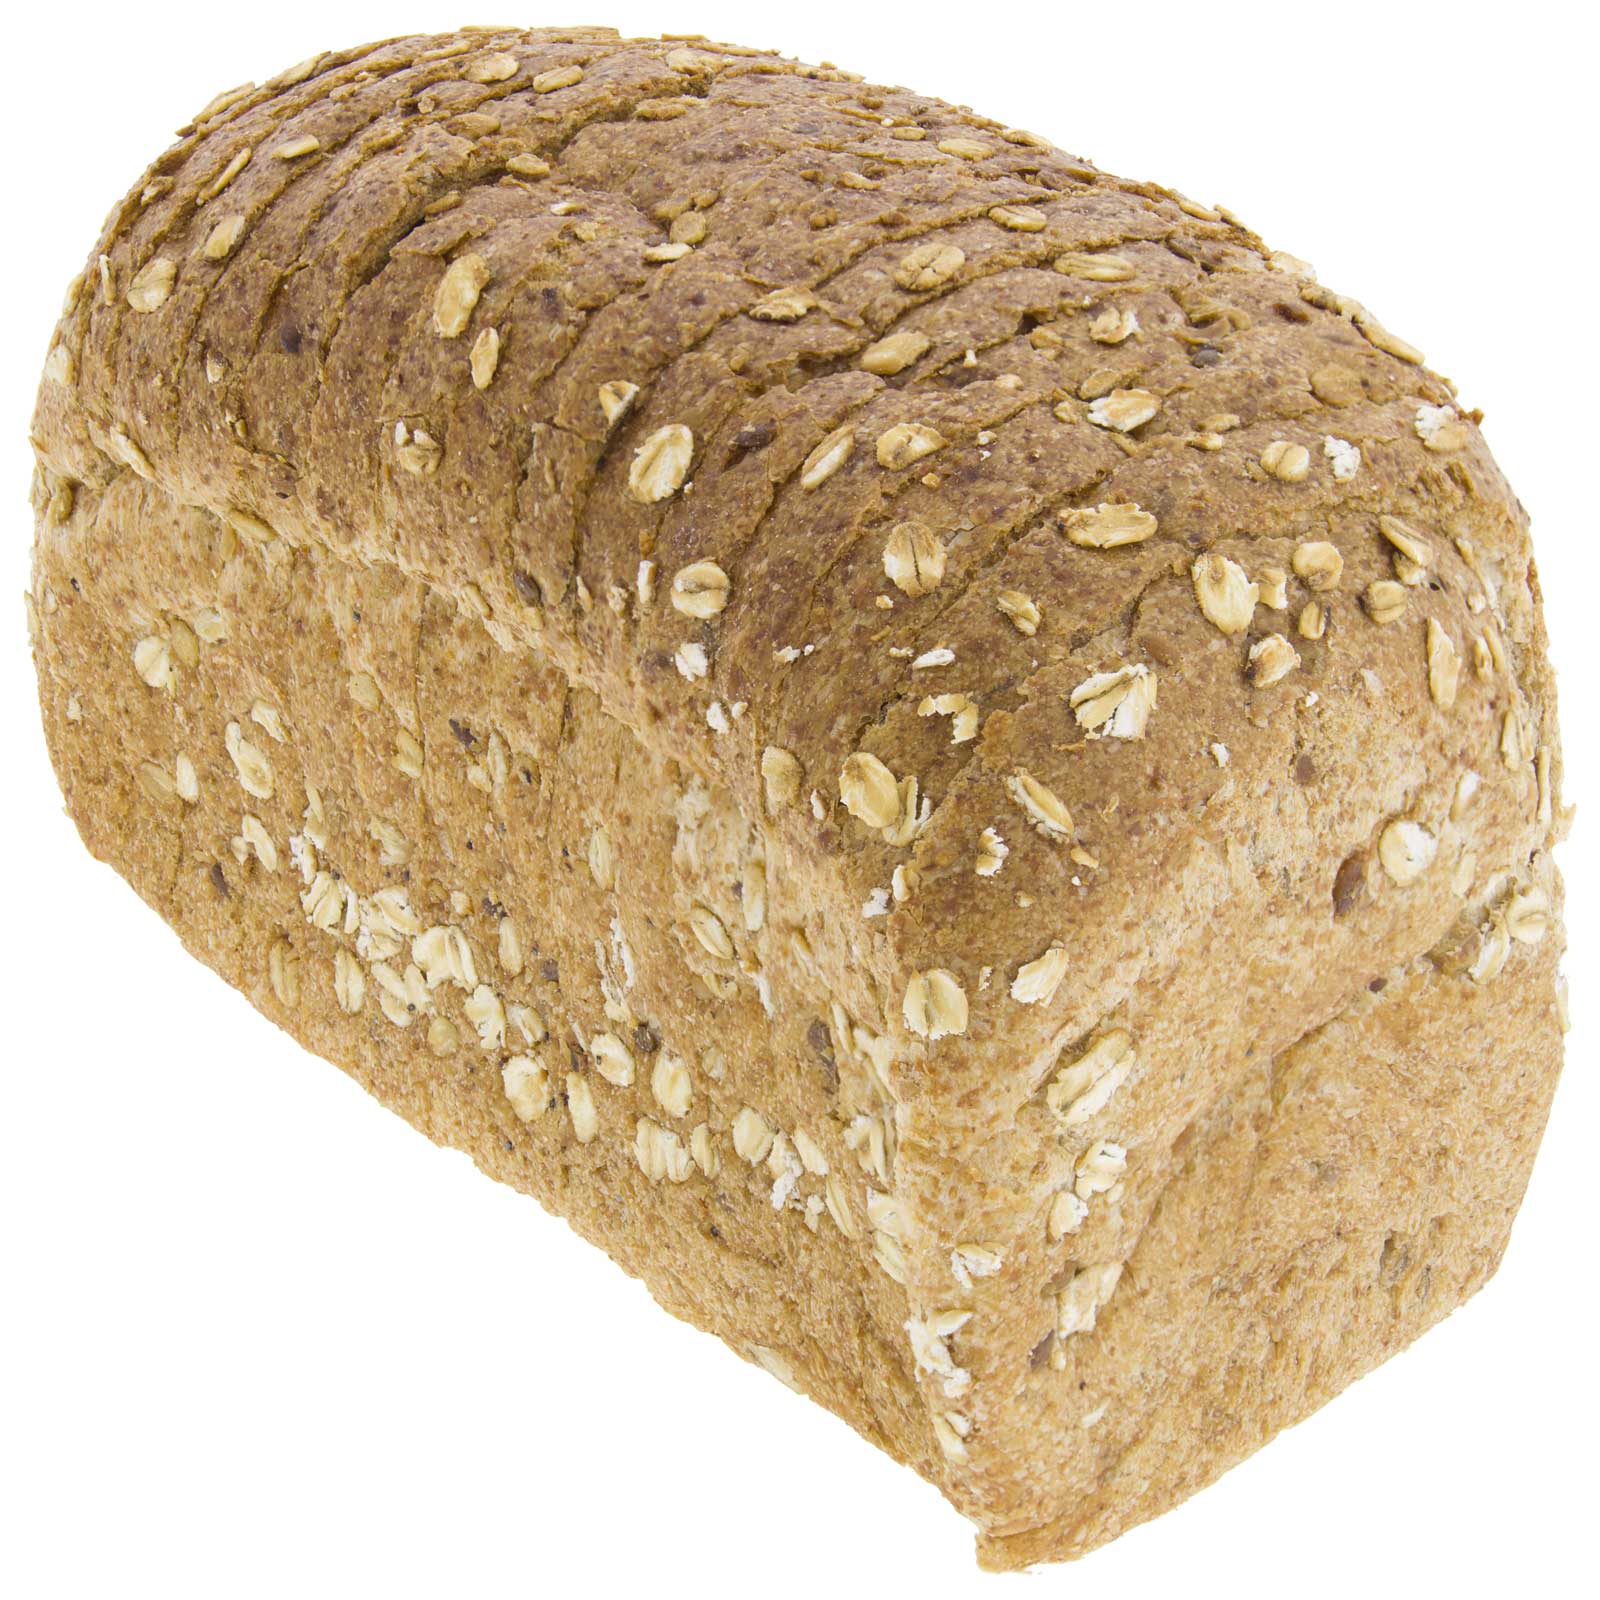 Pão de Espelta Integral com Cereais 450g Artesanal Biológico